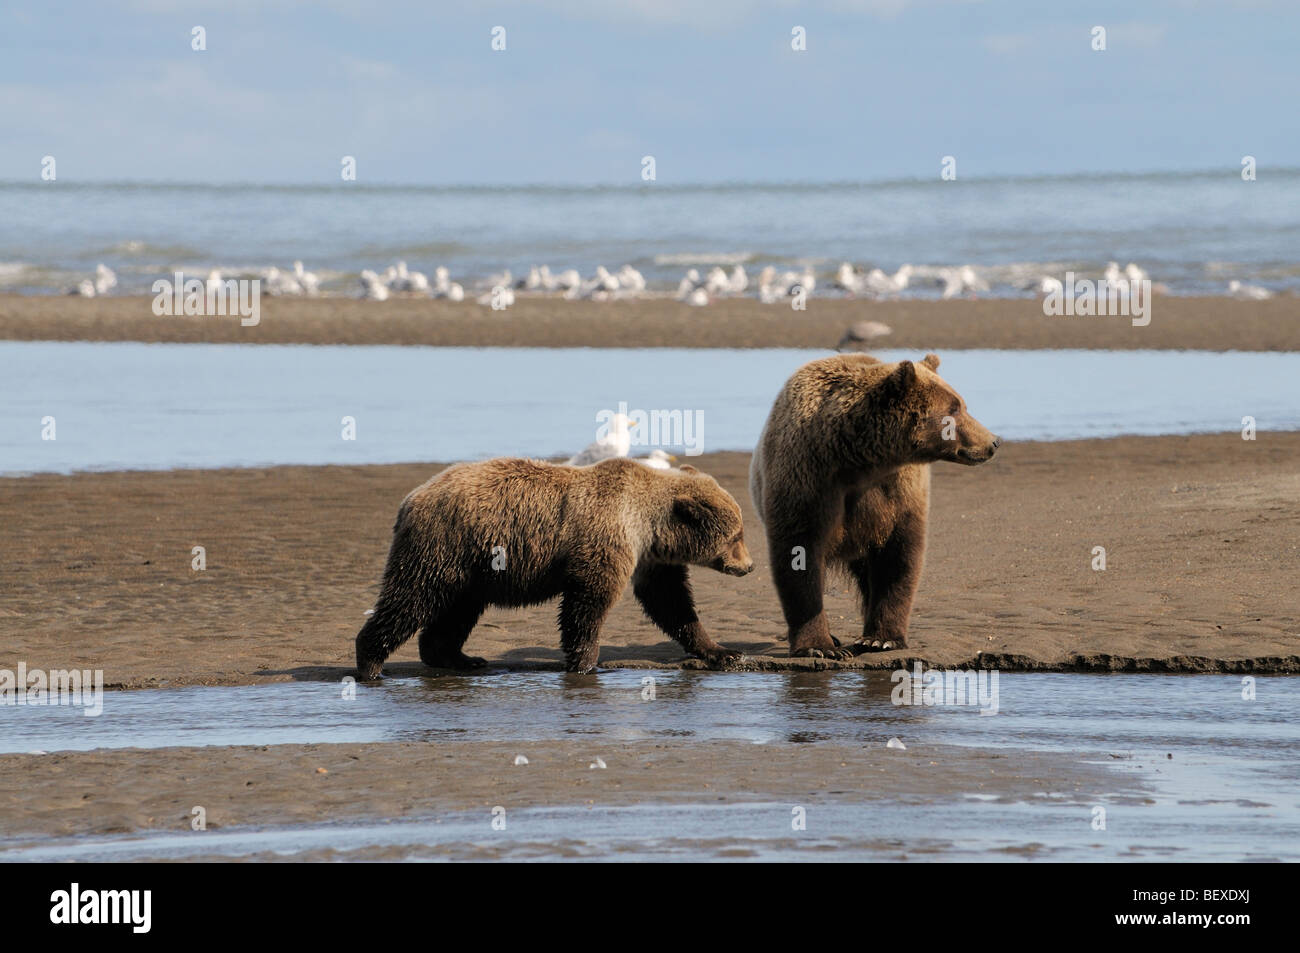 Stock Foto von einem Jährling Bärenjunge nähert sich seiner Mutter an einem Fluss aus dem Ozean, Lake-Clark-Nationalpark, Alaska. Stockfoto